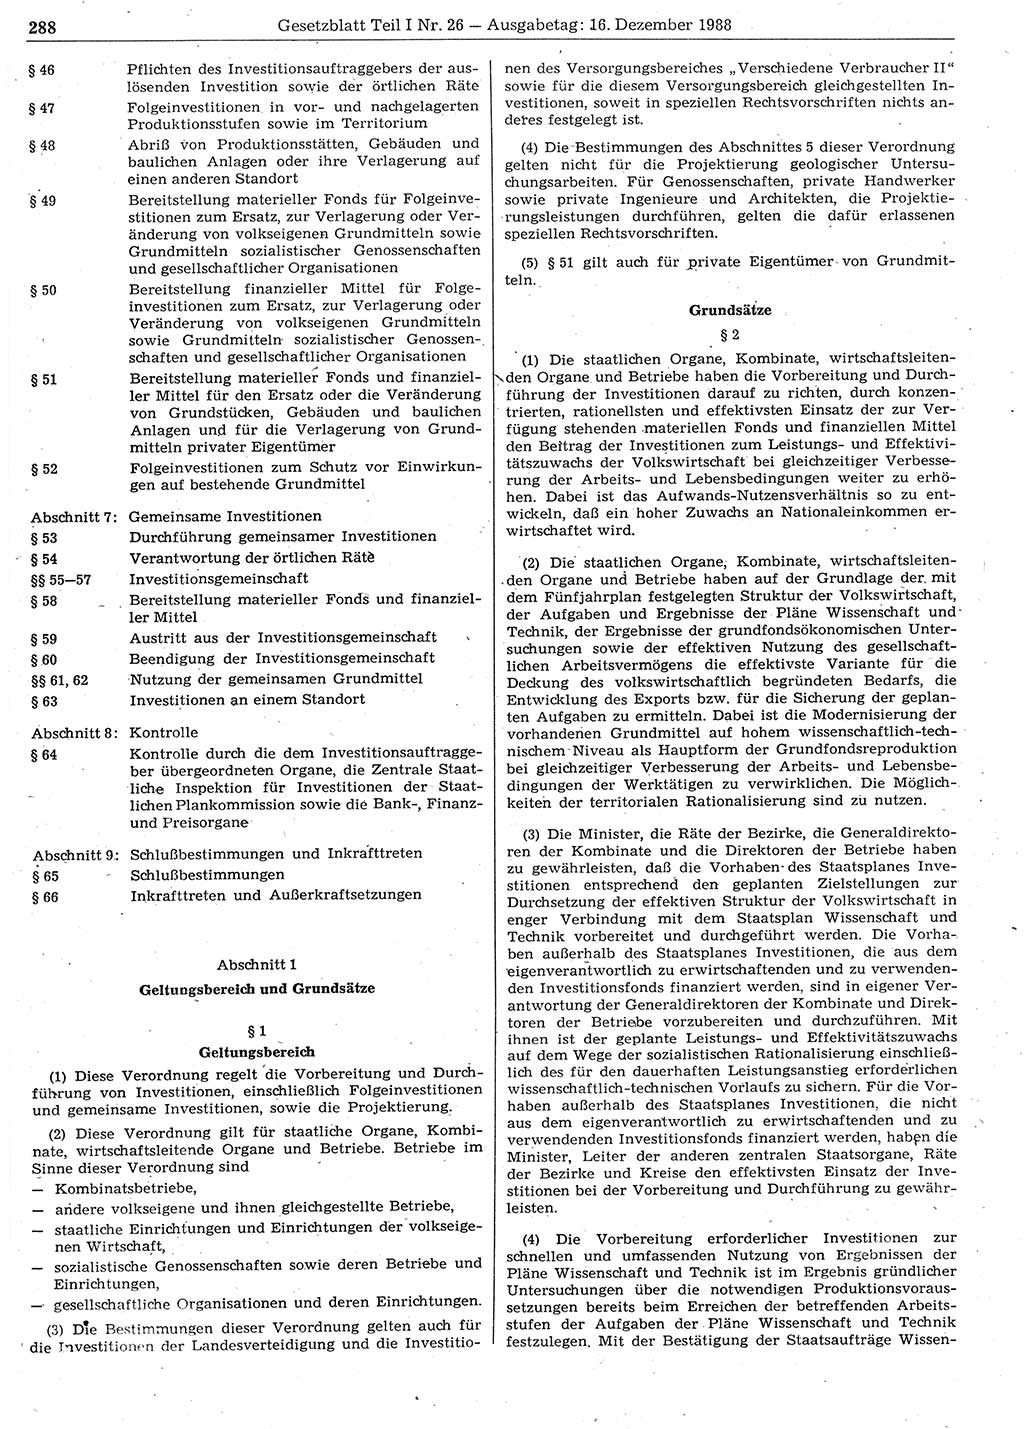 Gesetzblatt (GBl.) der Deutschen Demokratischen Republik (DDR) Teil Ⅰ 1988, Seite 288 (GBl. DDR Ⅰ 1988, S. 288)